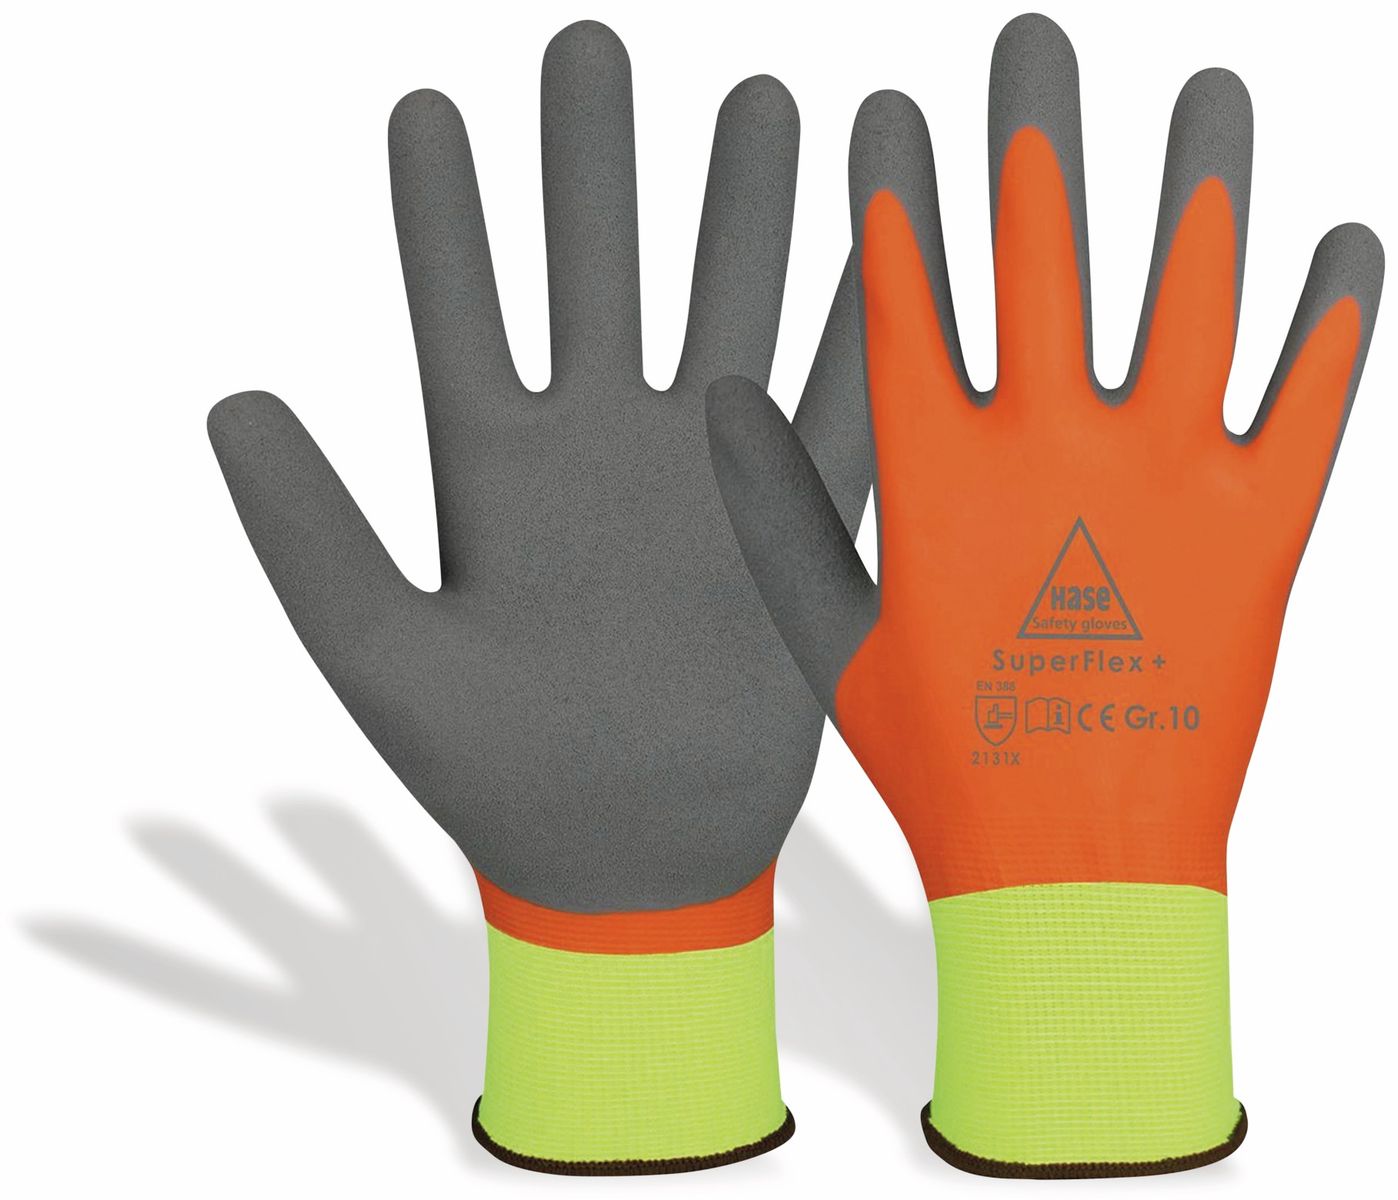 HASE SAFETY GLOVES Latex-Arbeitshandschuhe SuperFlex+, EN388, EN 420, neongelb/orange, Größe 9 von Hase Safety gloves